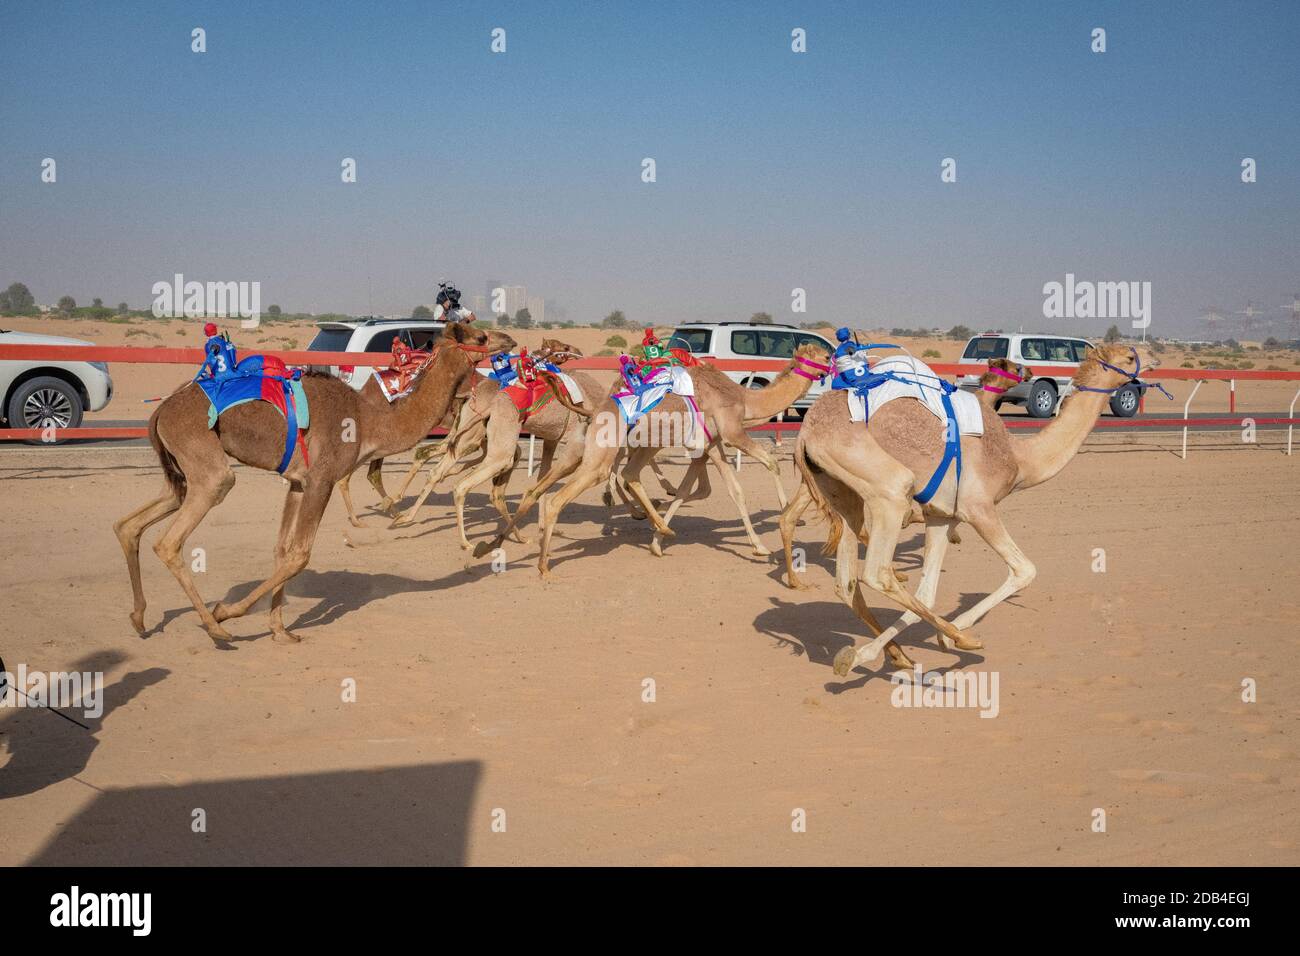 Emirats Arabes Unis / Al Dhaid / Camel Race in Région centrale de l'émirat de Sharjah aux États-Unis Émirats arabes voyant des animaux flanqués d'étendues Banque D'Images